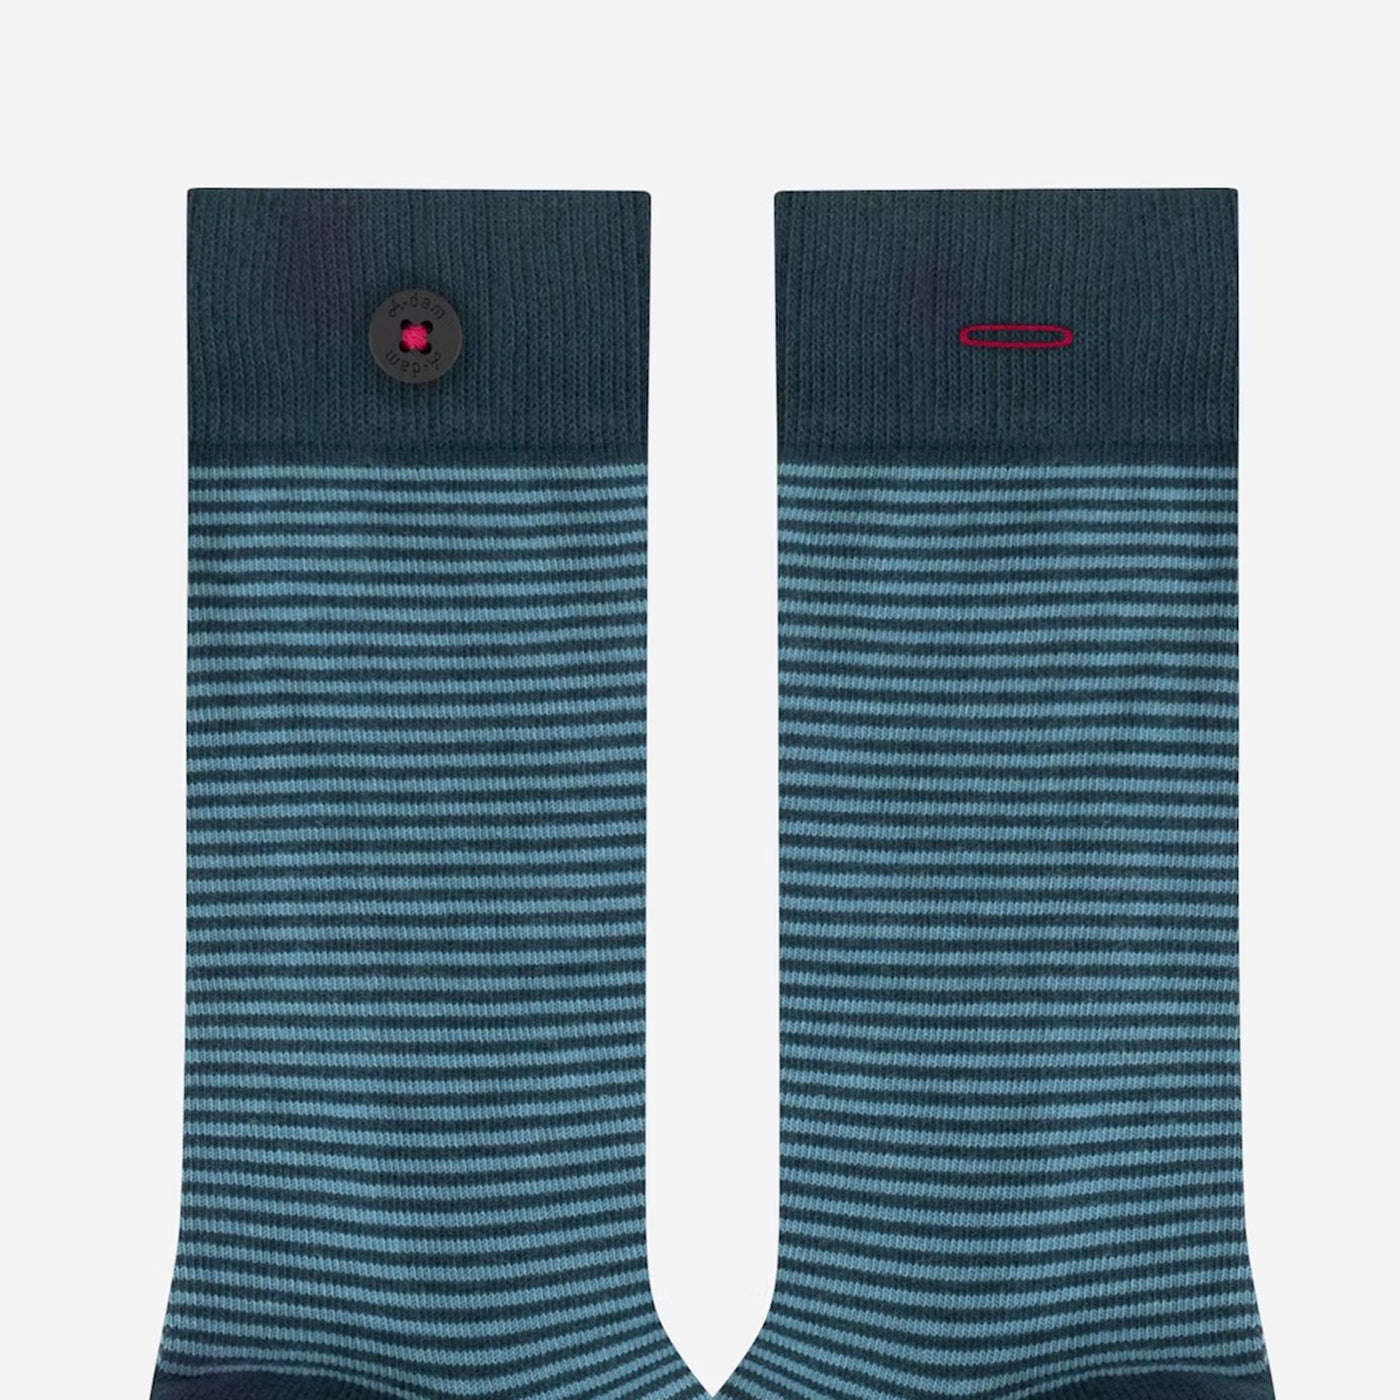 Stickerei-Socken aus Bio-Baumwolle